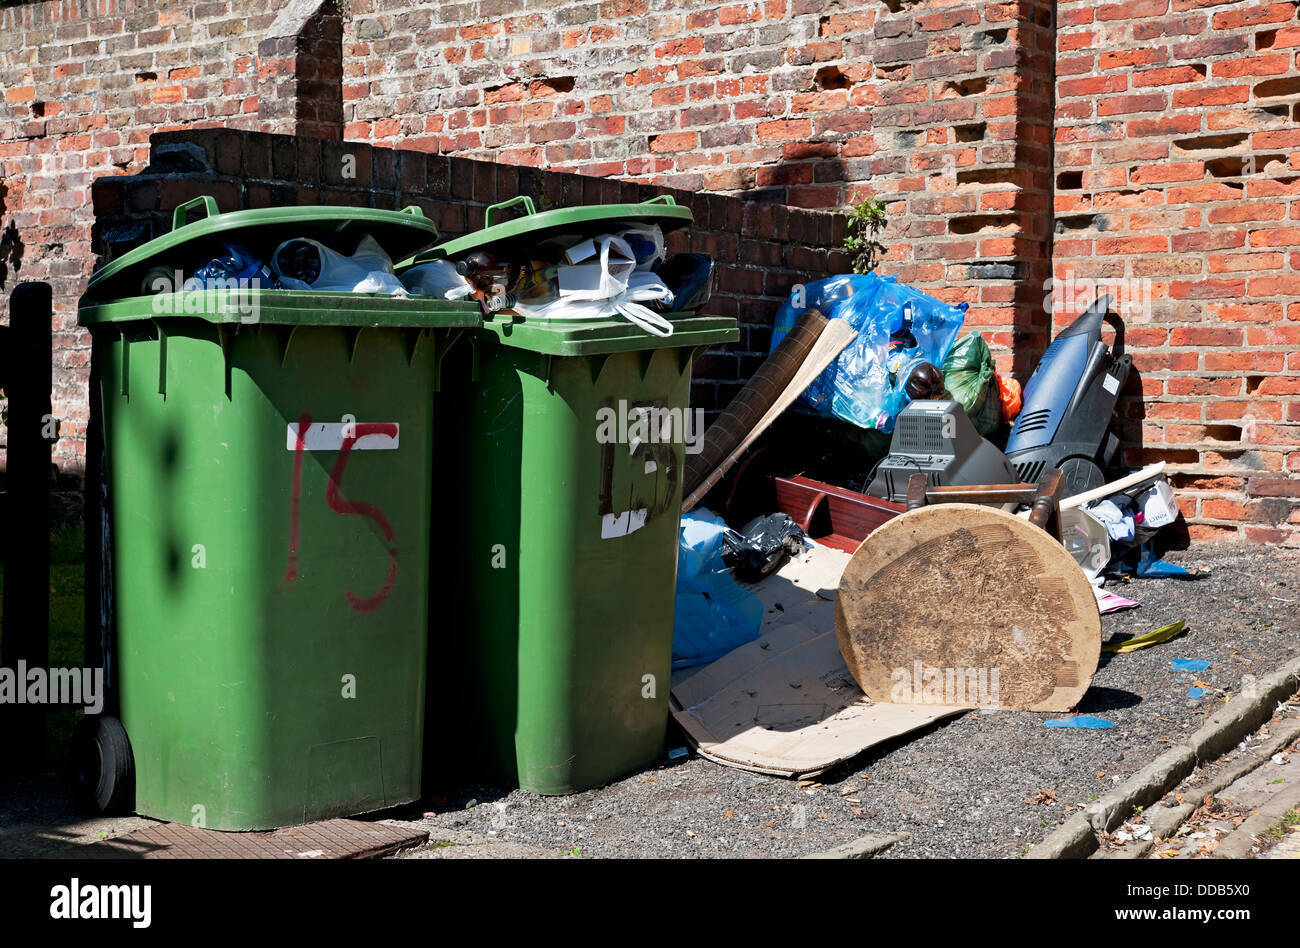 Voll überlaufender grüner Recycling-Abfalleimer Abfalleimer Abfalleimer Müllkippen und Fliegen-Kippen-Kippen-Müll-Chaos England Großbritannien Großbritannien Großbritannien Großbritannien Großbritannien Großbritannien Großbritannien Stockfoto